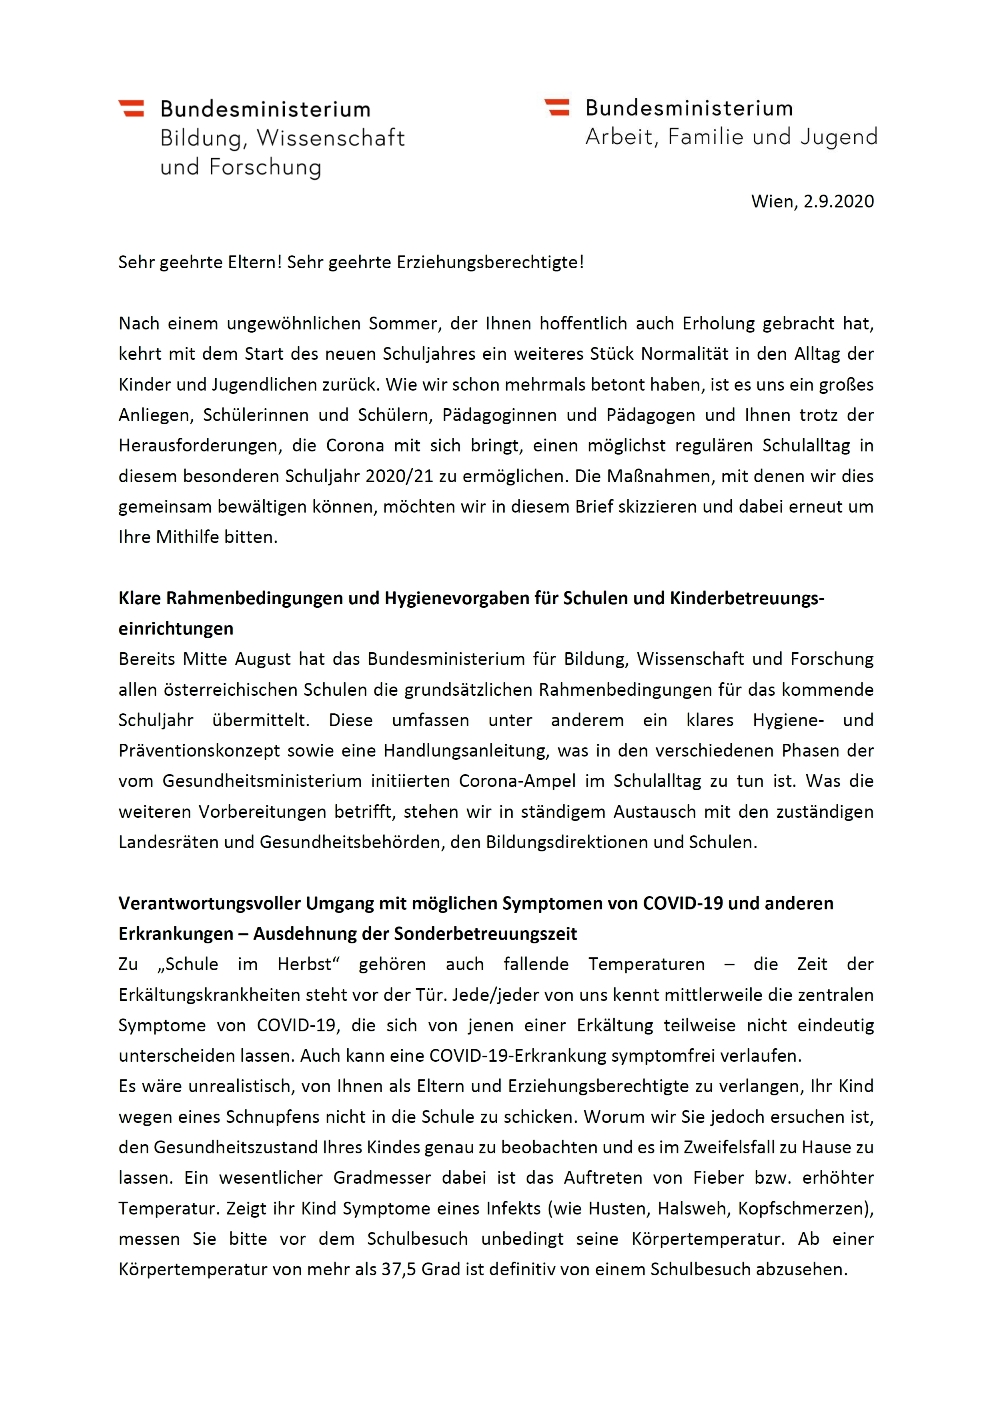 Elternbrief BM Fassmann Aschbacher Sep 2020 seite1